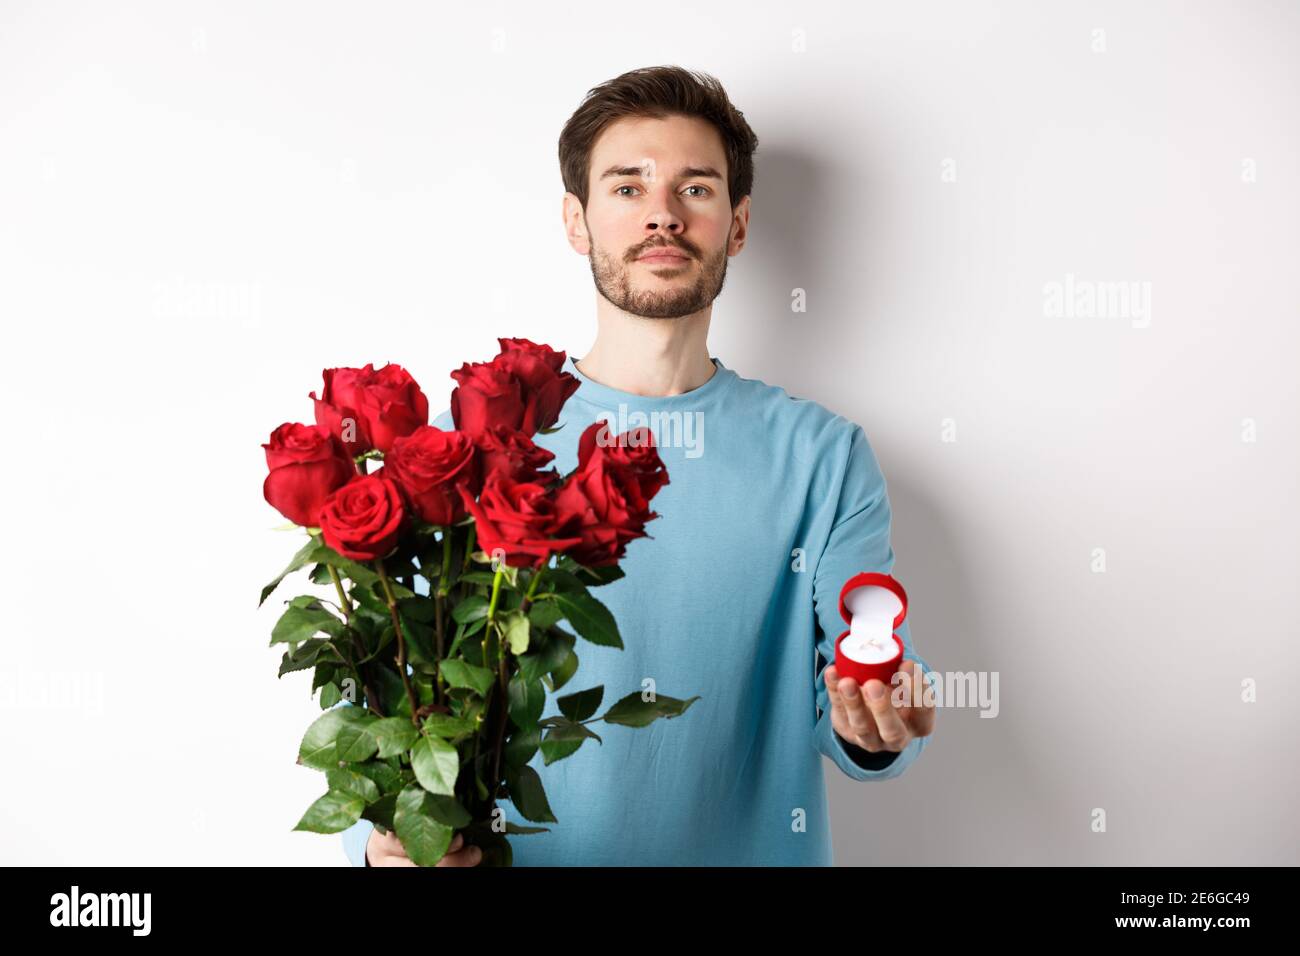 Valentines und Beziehung. Romantischer Mann Freund hält rote Rosen und  zeigt Verlobungsring, einen Vorschlag für Liebhaber Tag, über stehen  Stockfotografie - Alamy